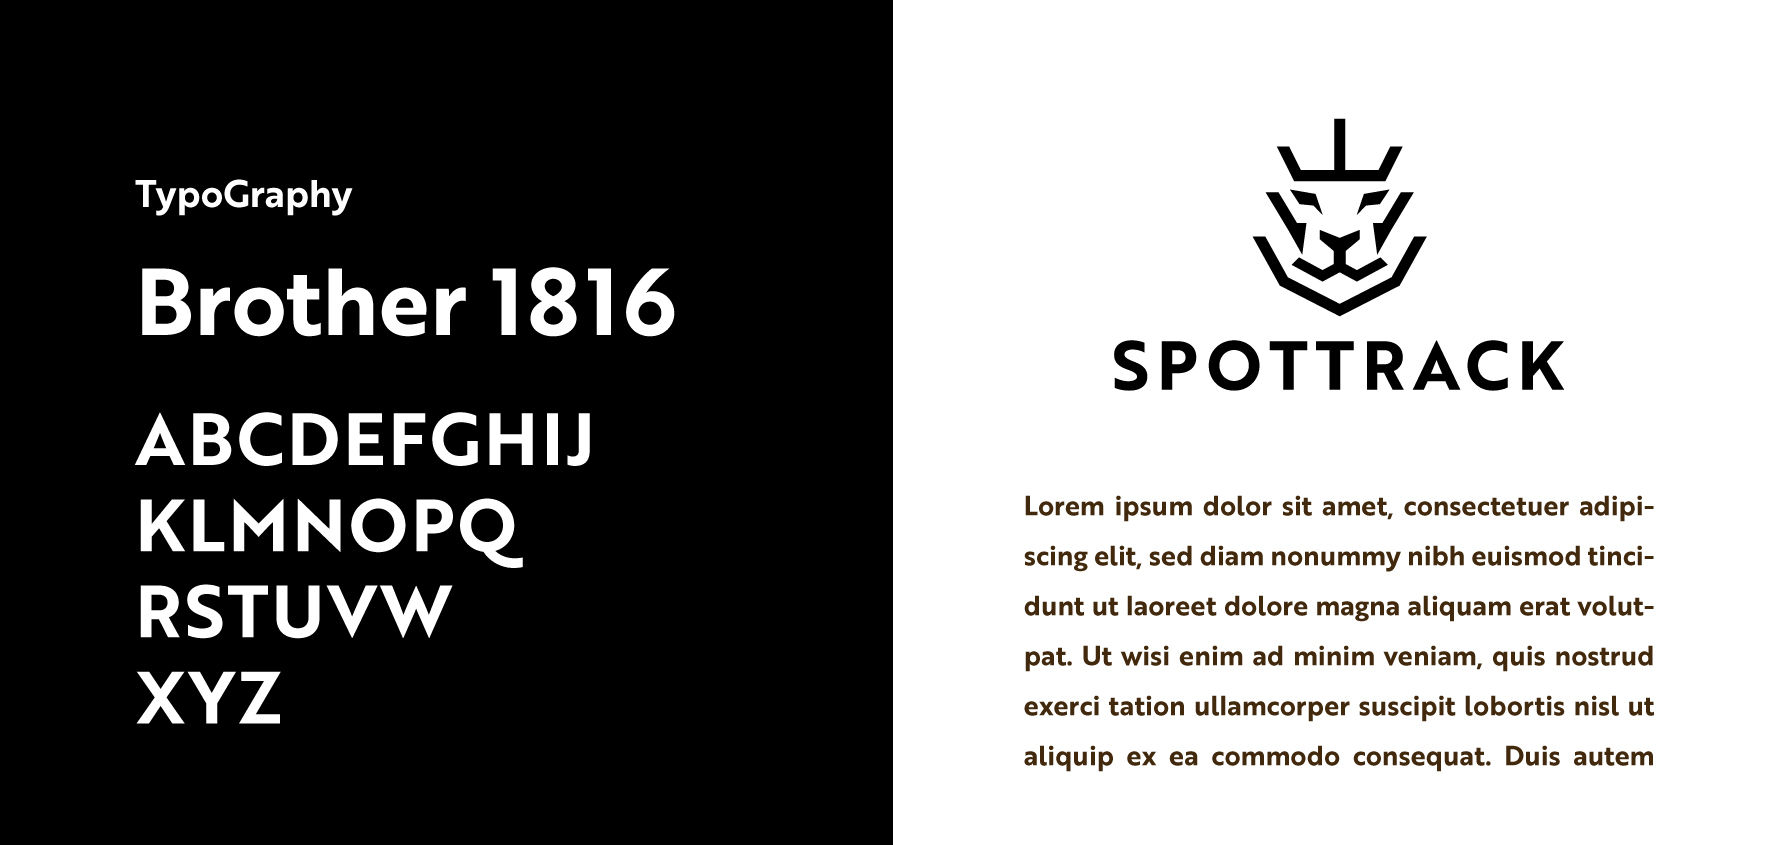 Spottrack, logo, font, Brother 1816